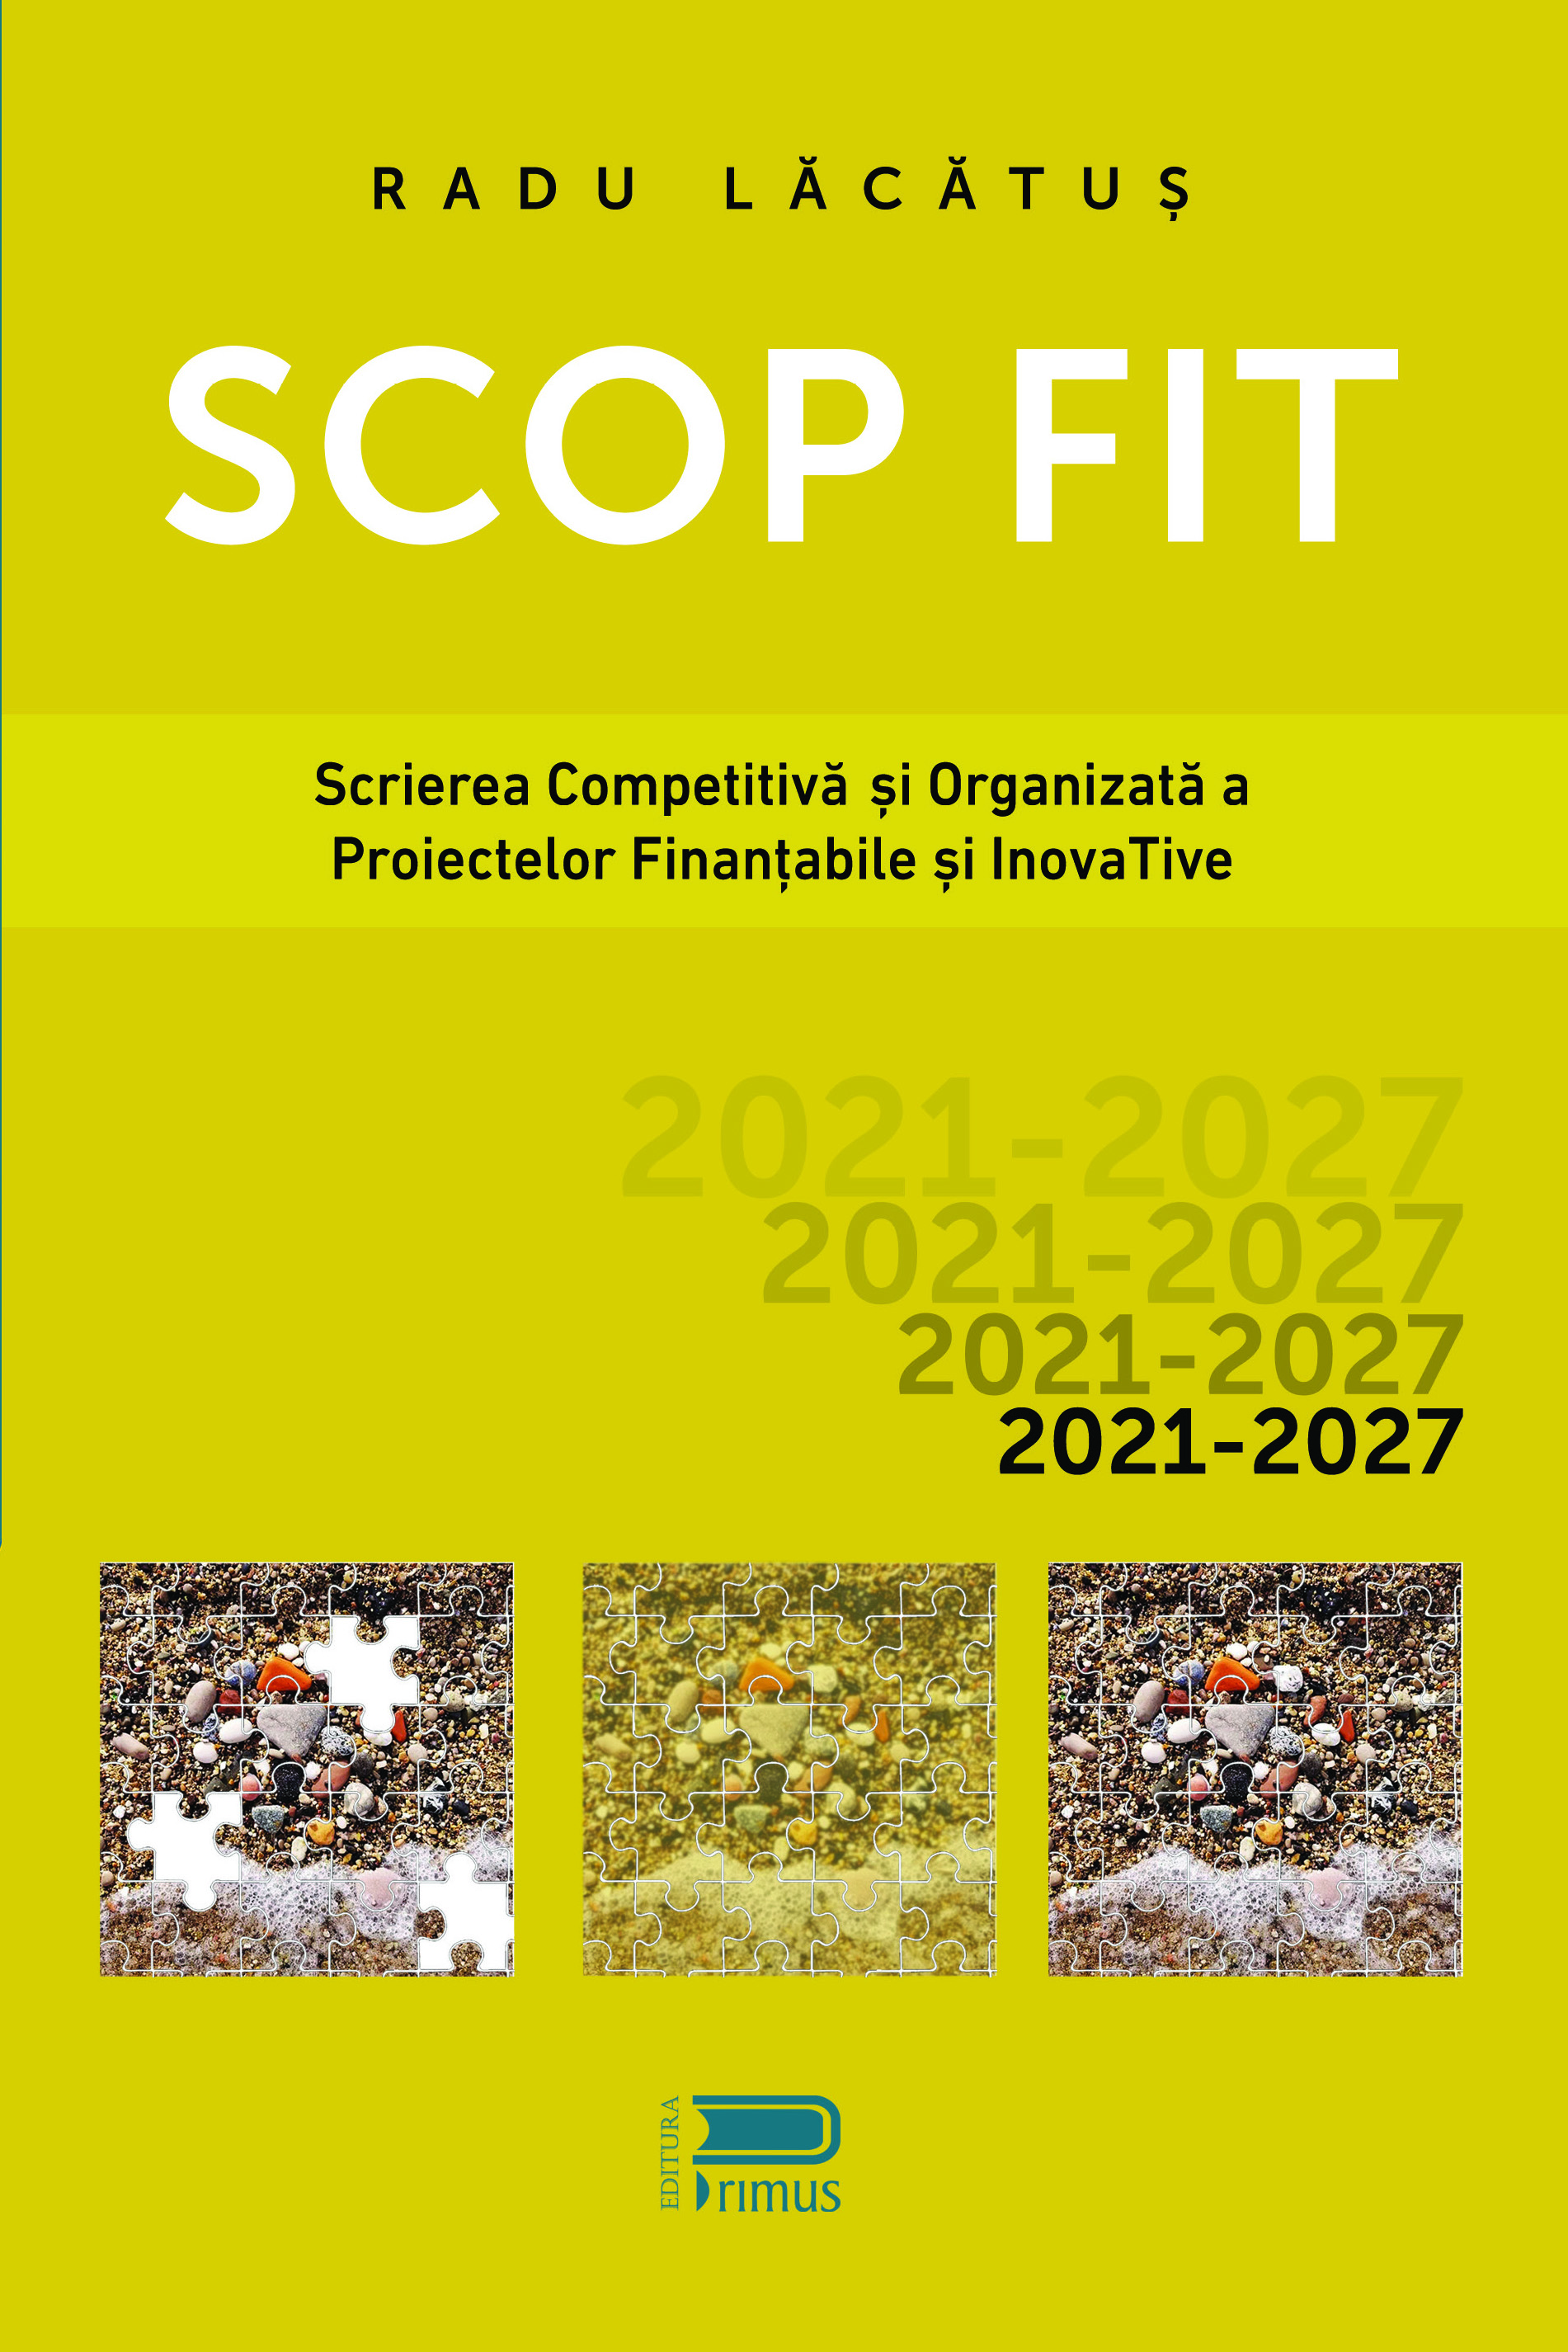 SCOP FIT: Scrierea competitiva si organizata a proiectelor finantabile si inovative | Radu Lacatus carturesti.ro imagine 2022